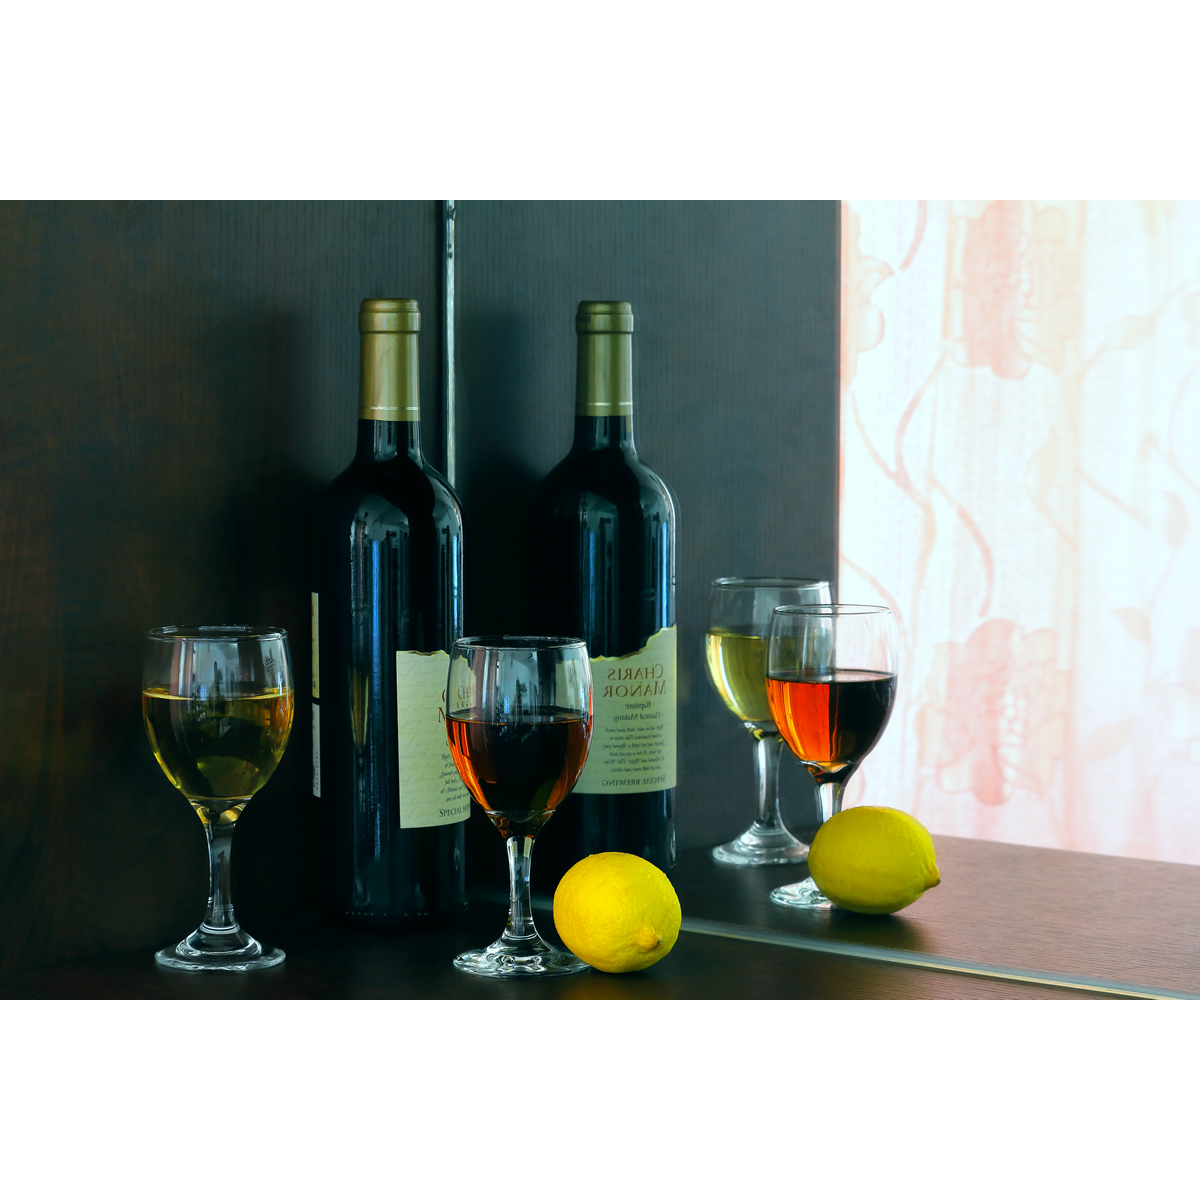 超清静物摄影作品-红酒与酒杯镜像(1张) 实拍静物图片素材